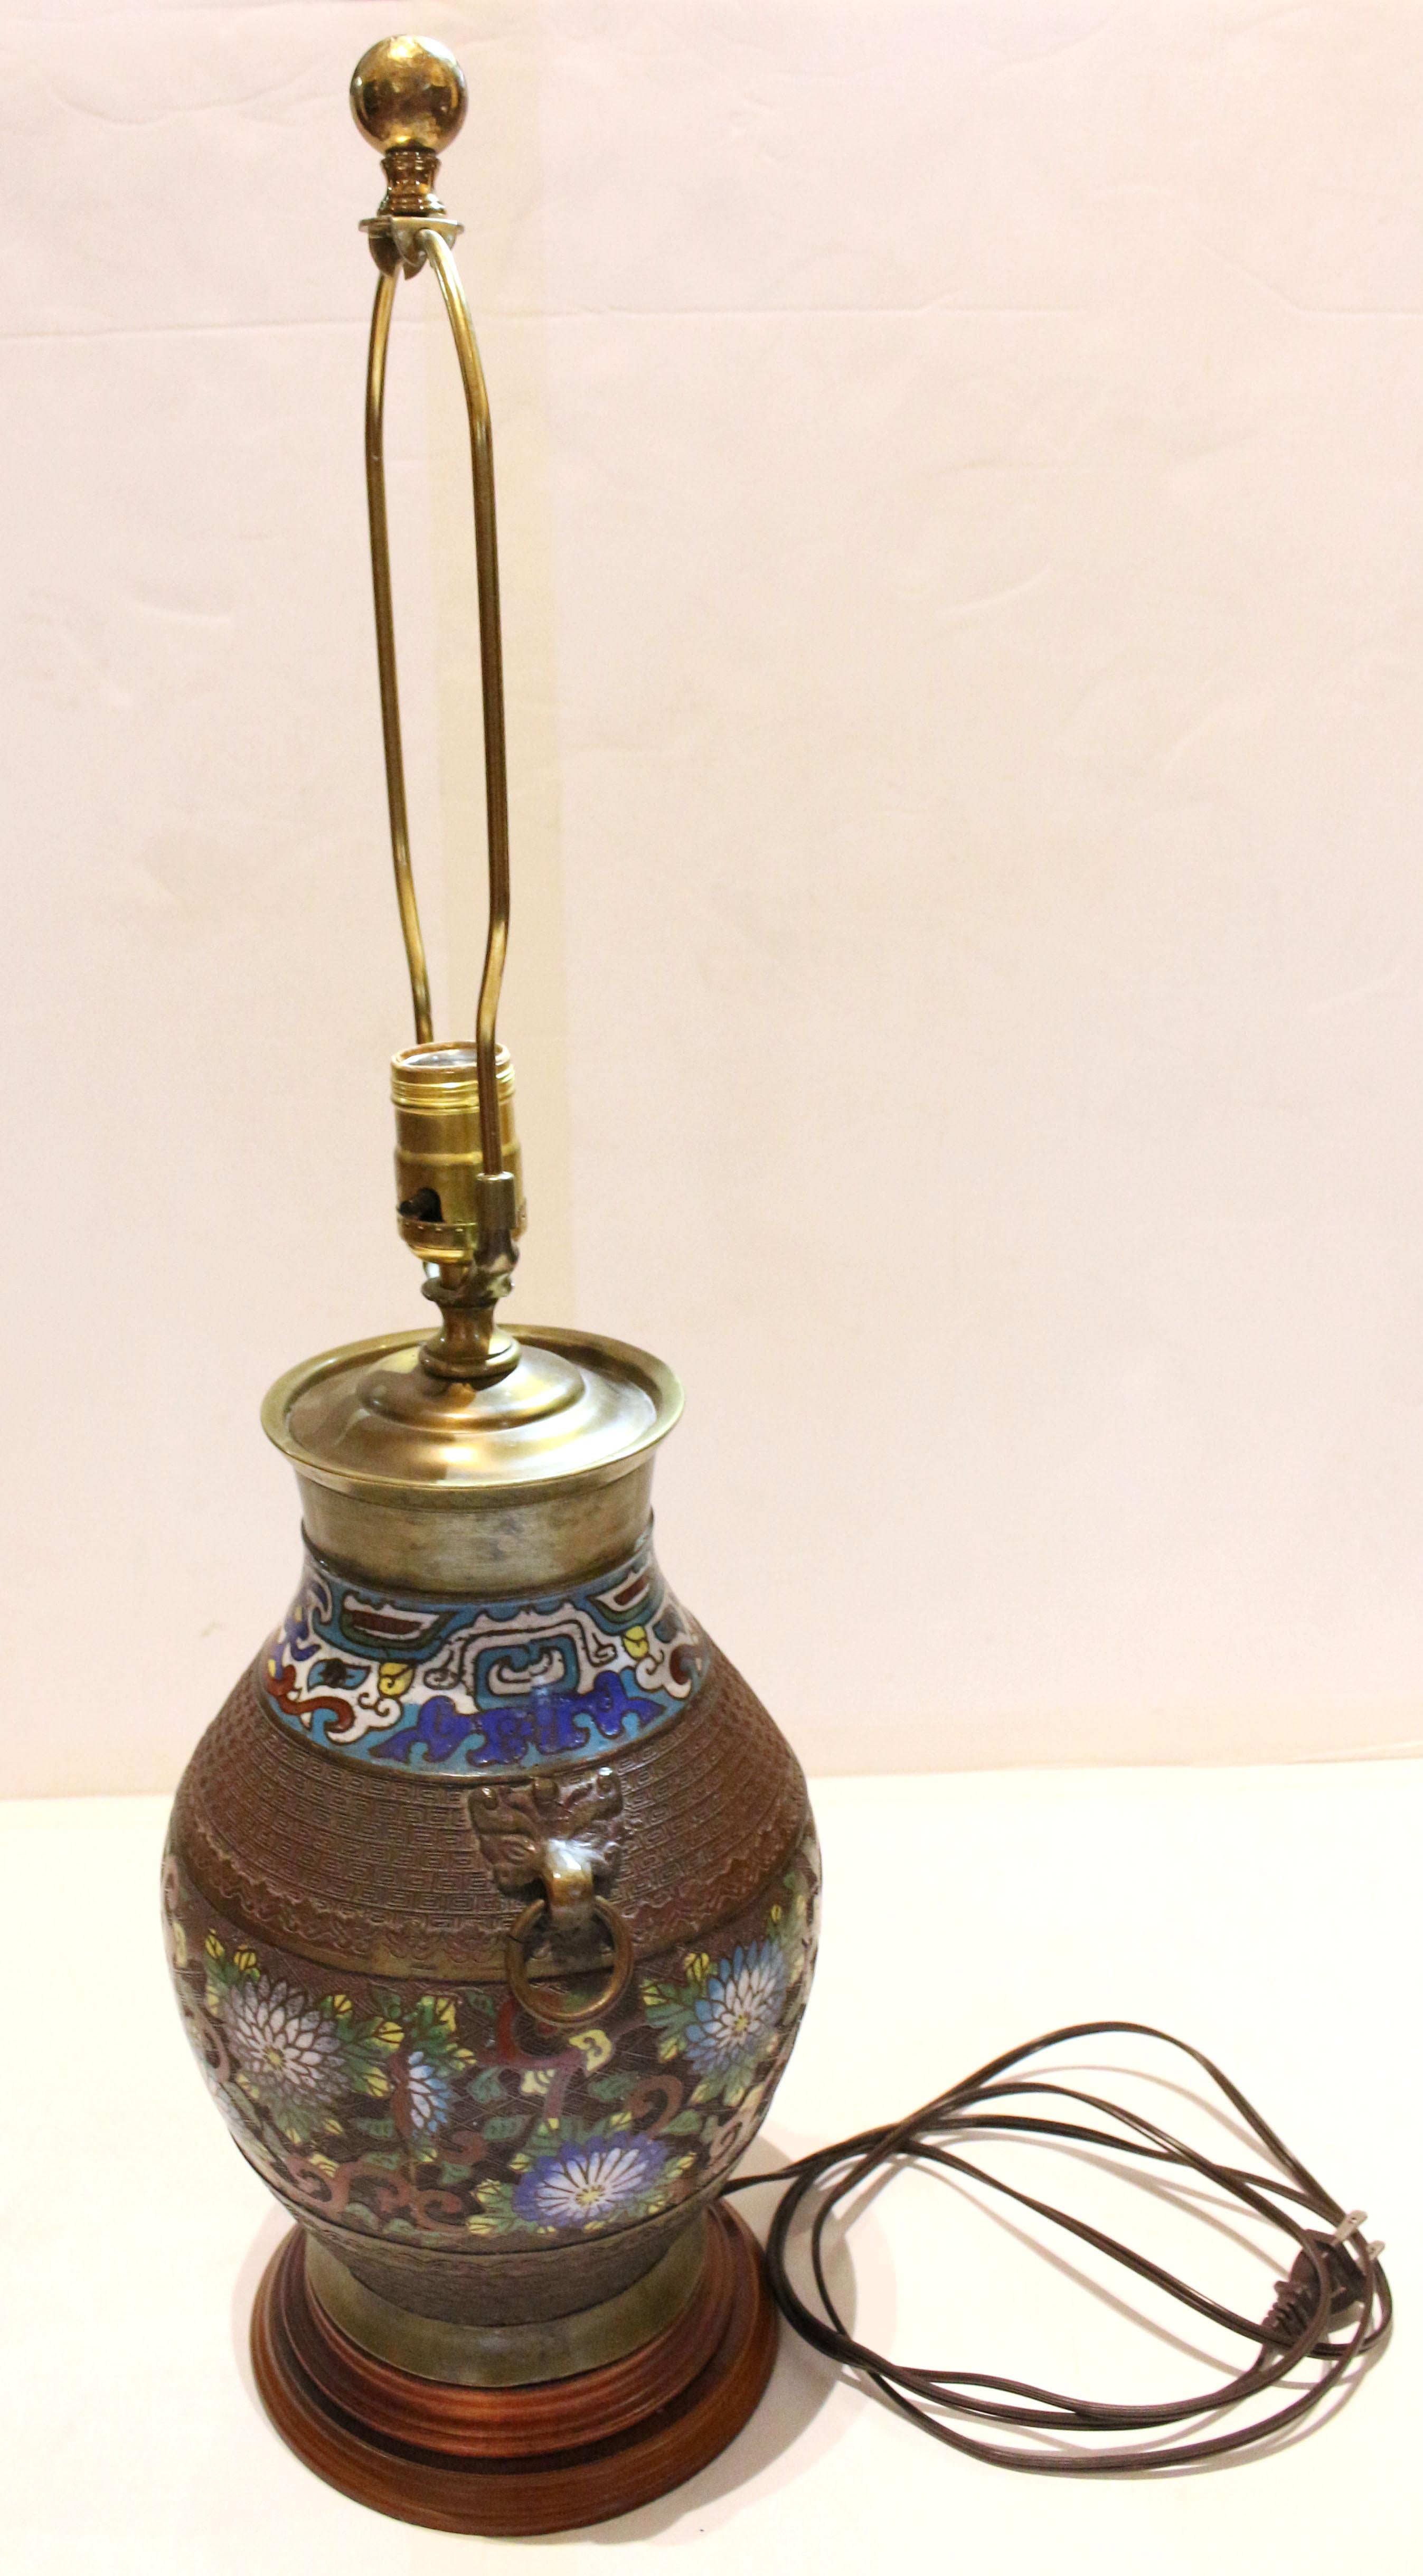 Lampe-vase japonaise en bronze et champlevé de la fin du XIXe siècle. Design/One. Le vase a été transformé en lampe au cours du 20e siècle. Beau travail de champlevé avec des pivoines et des vrilles. Poignées en forme d'anneau. 
17